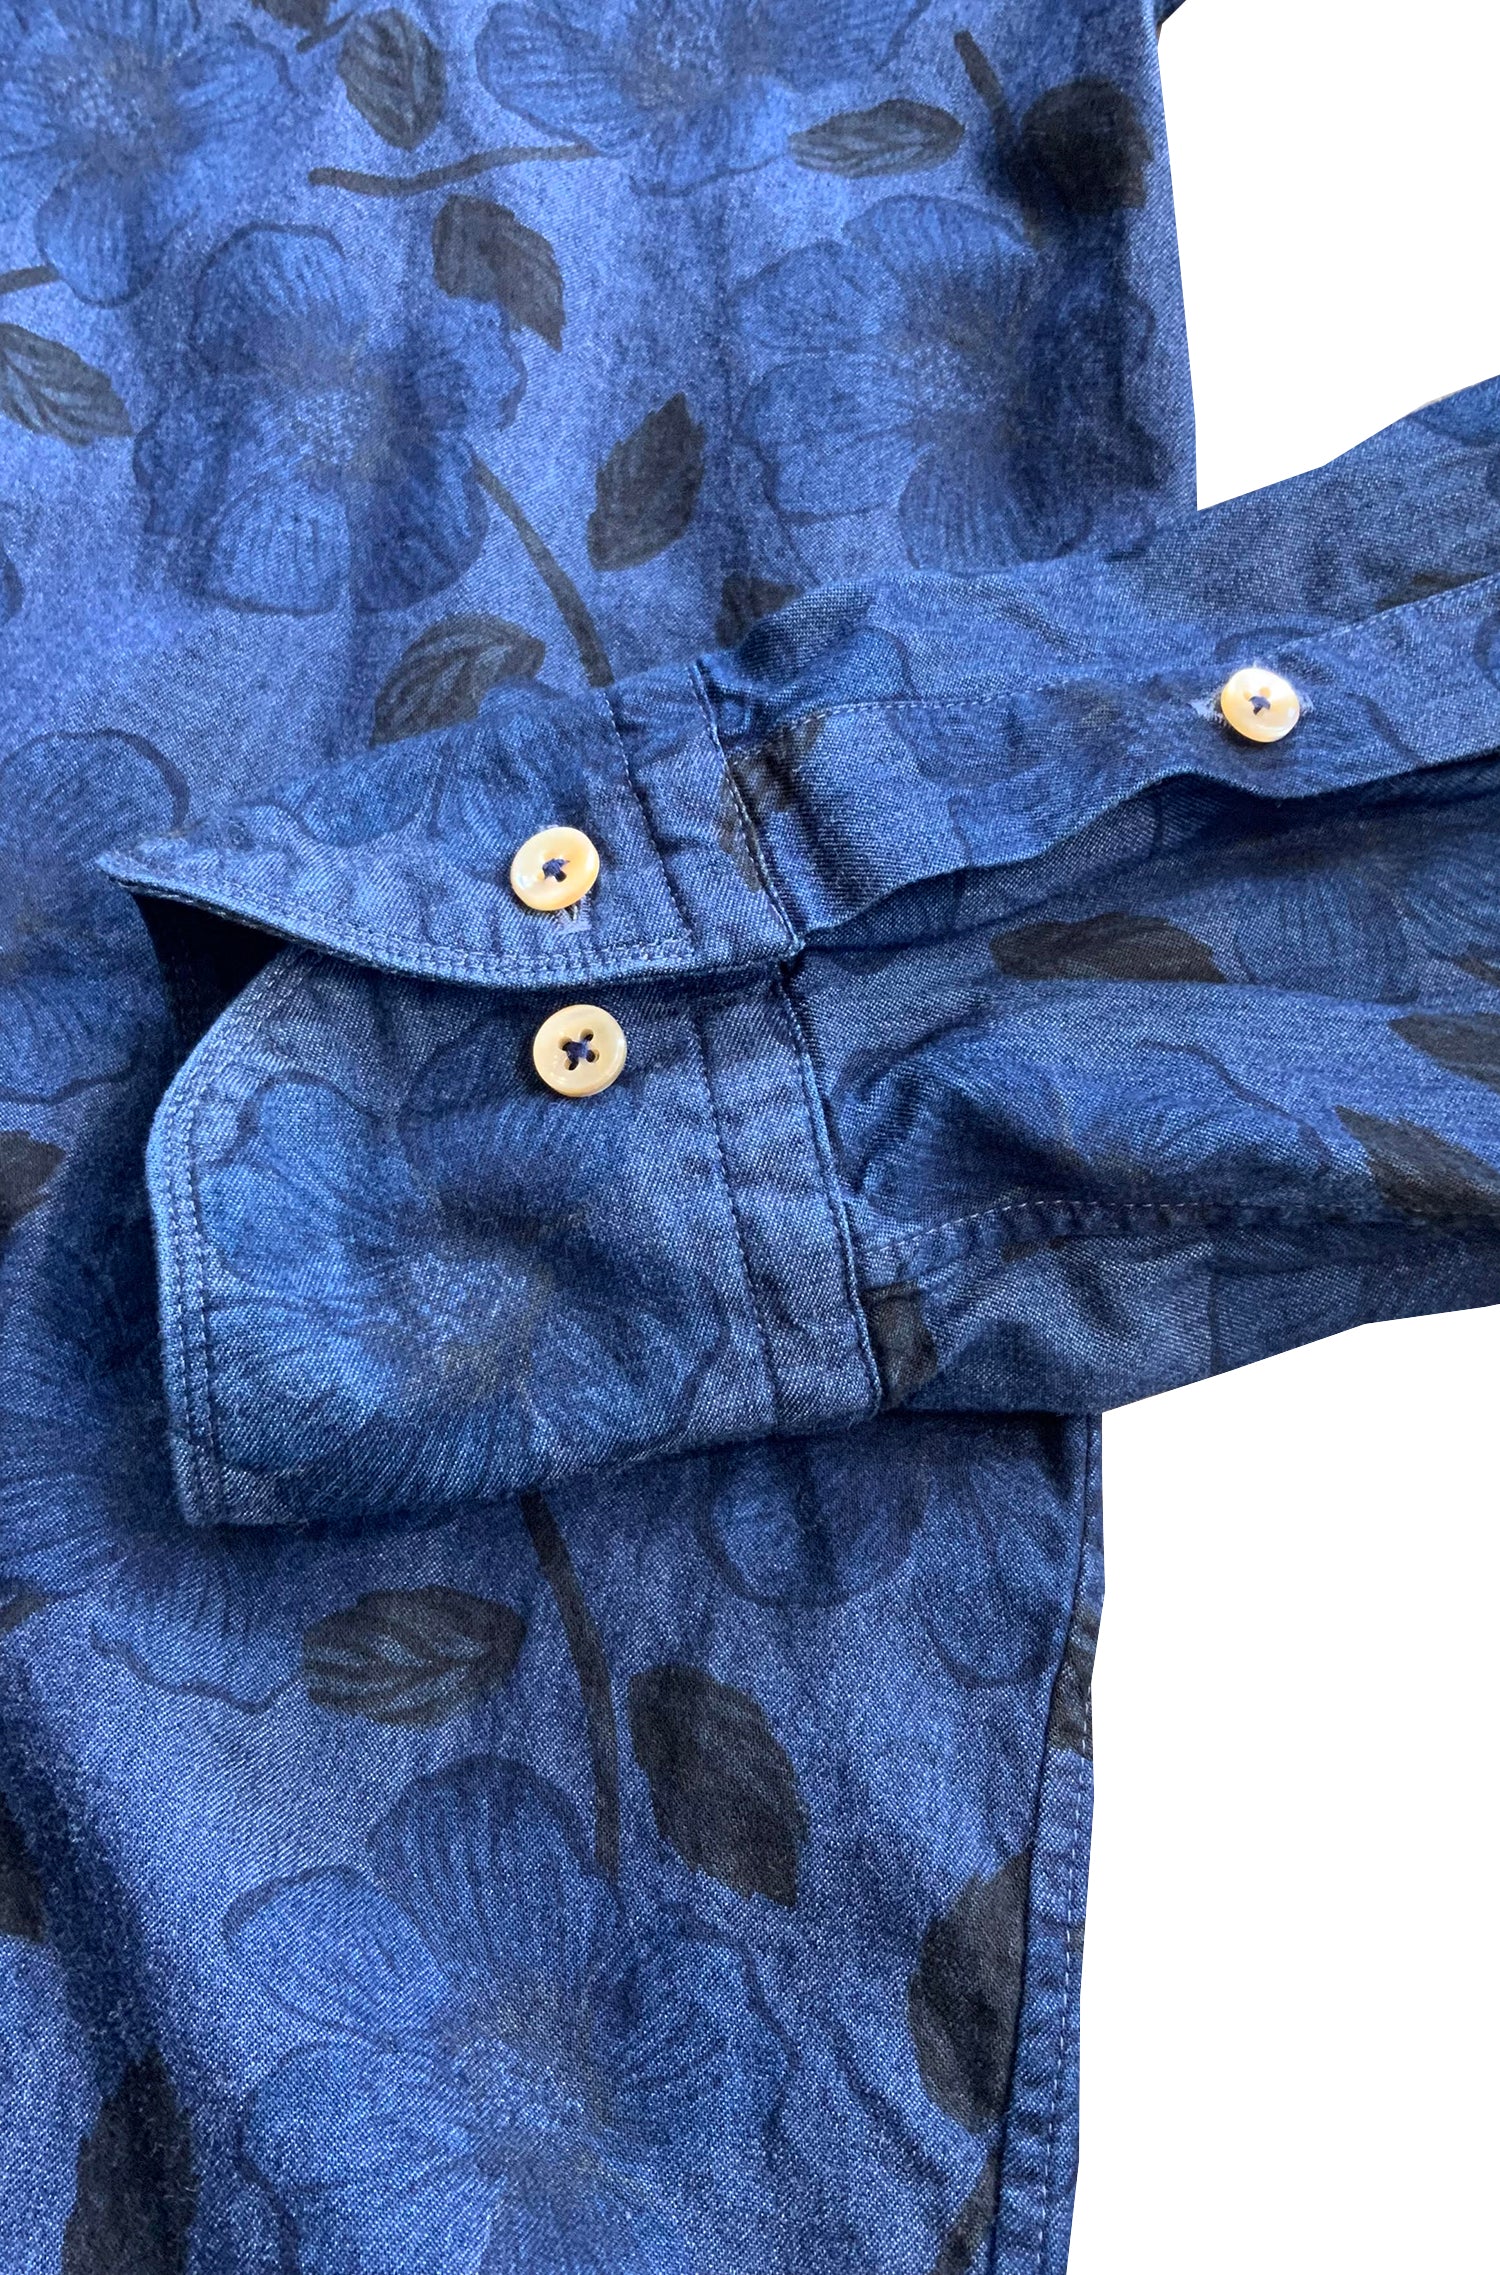 STENSTROMS - SLIMLINE Dark Blue Casual Floral Patterned Shirt 7747218497811